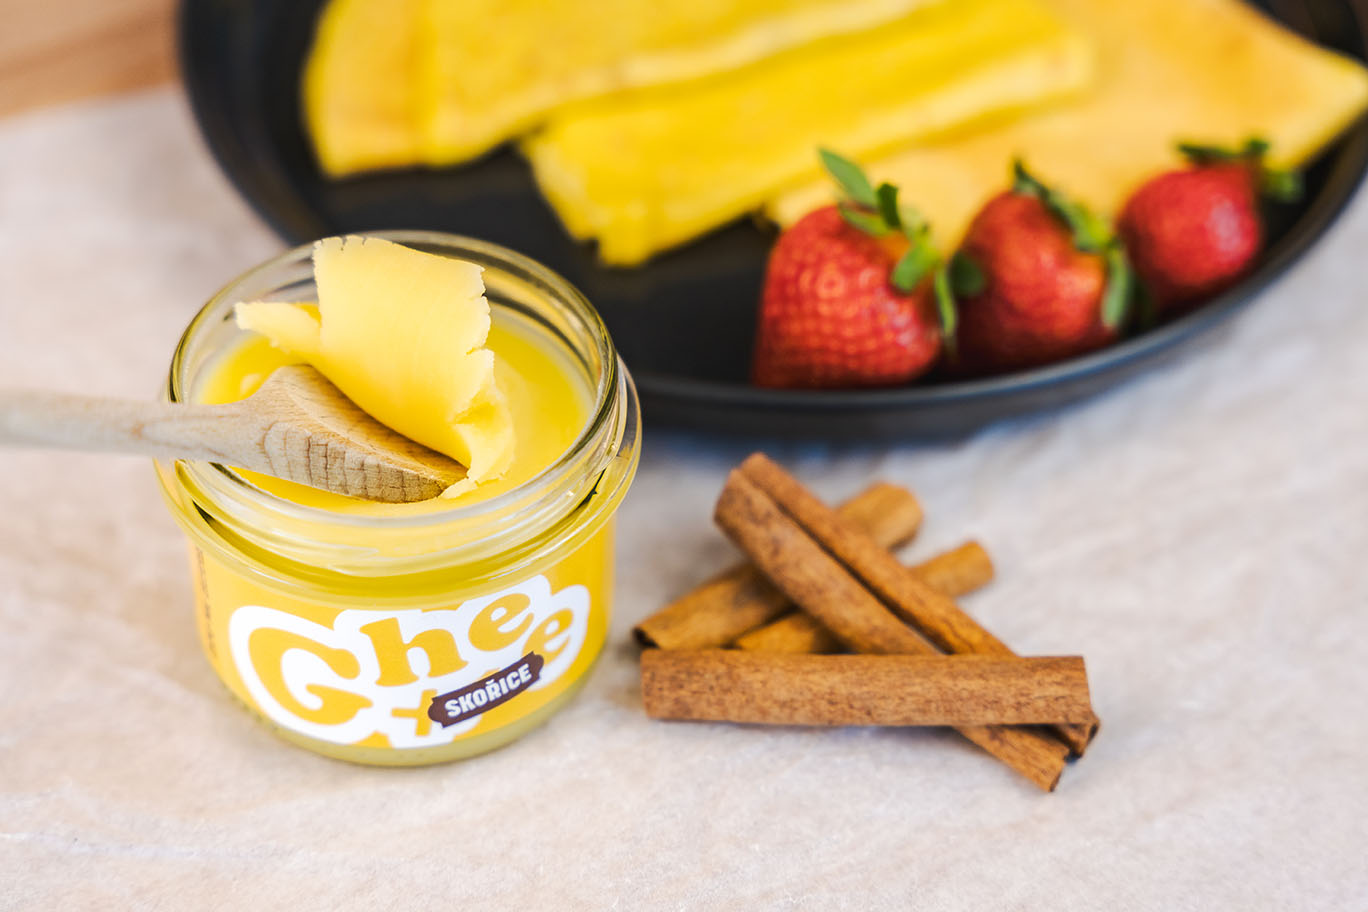 Ghee+ | přepuštěné máslo | 220ml skořice s vanilkou - karton 12ks